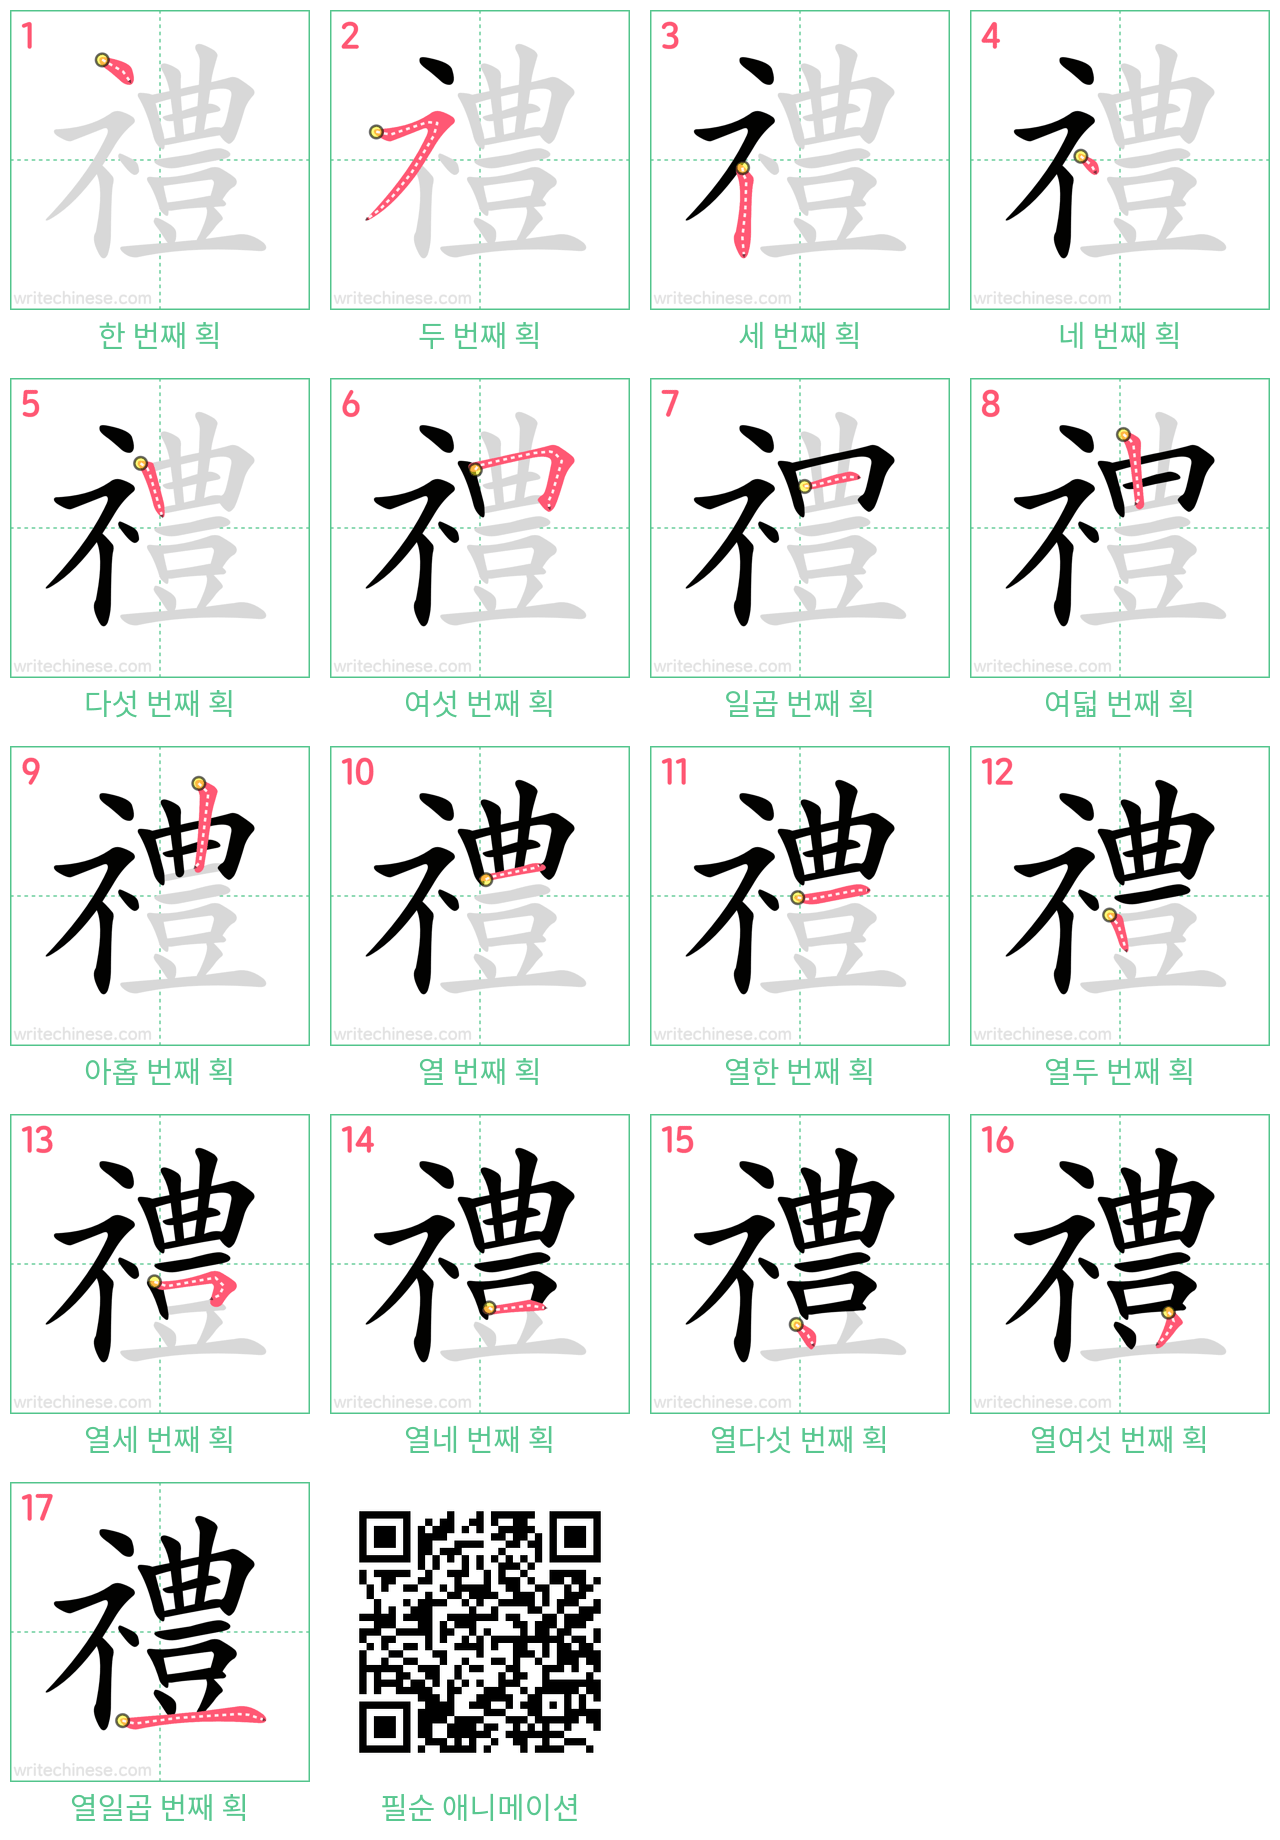 禮 step-by-step stroke order diagrams